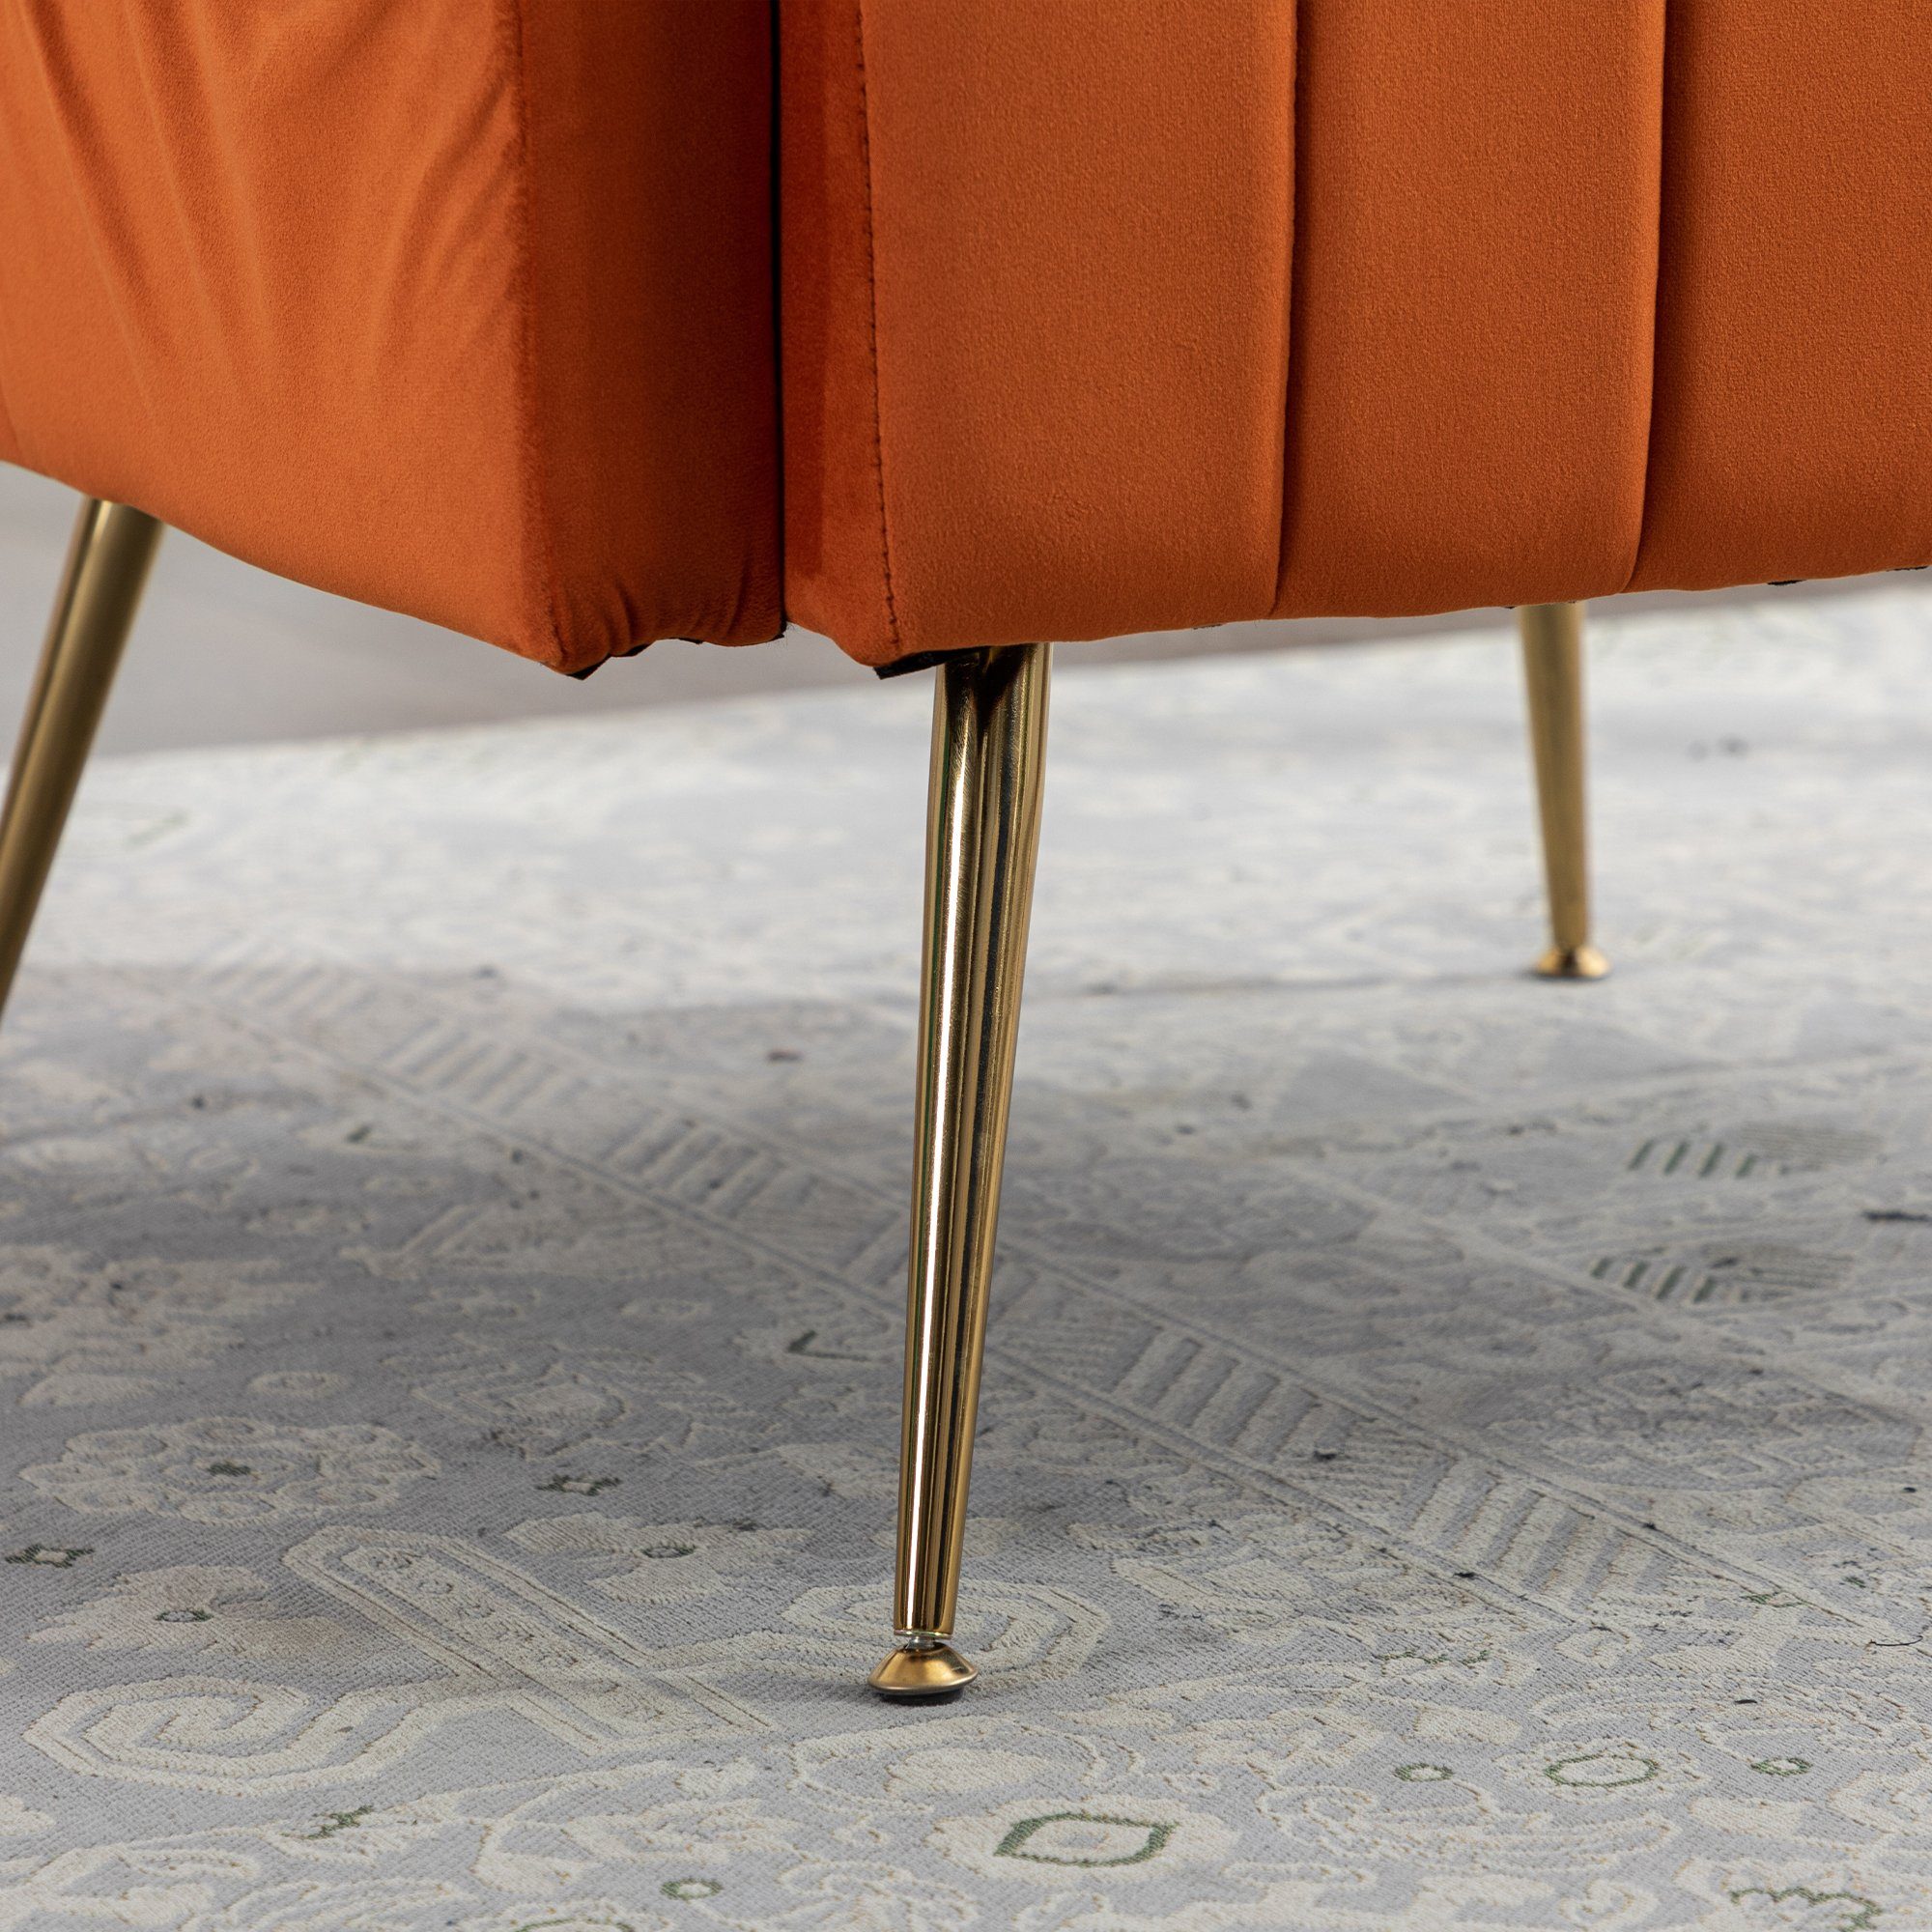 Odikalo Loungesessel Einzelsofa Akzent Stuhl gepolstert Füßen mehrfarbig Freizeit Orange goldene